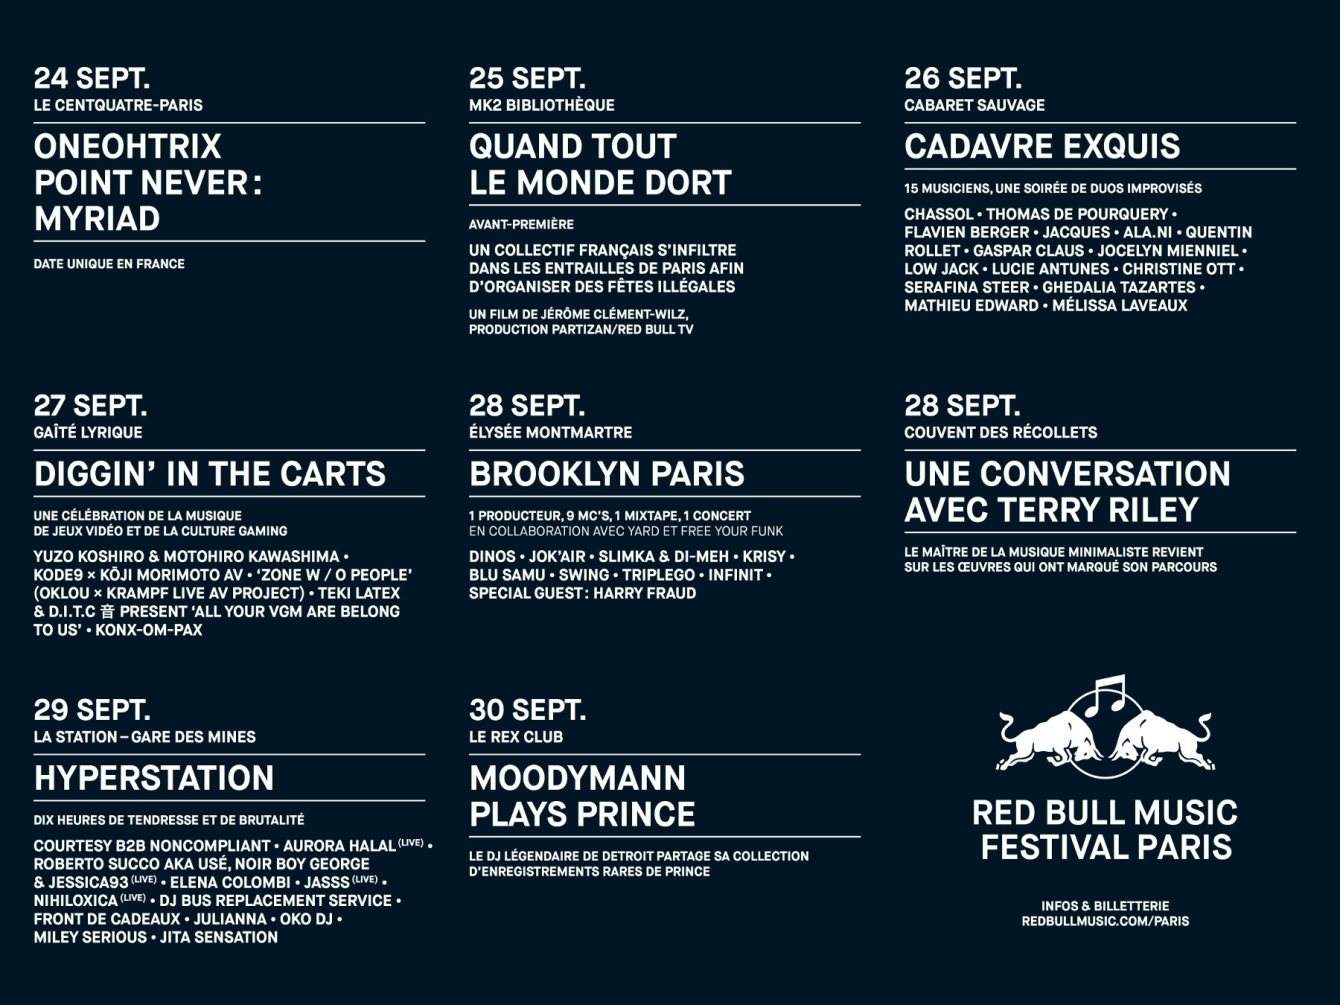 Red Bull Music Festival Paris 2018 - Página trasera